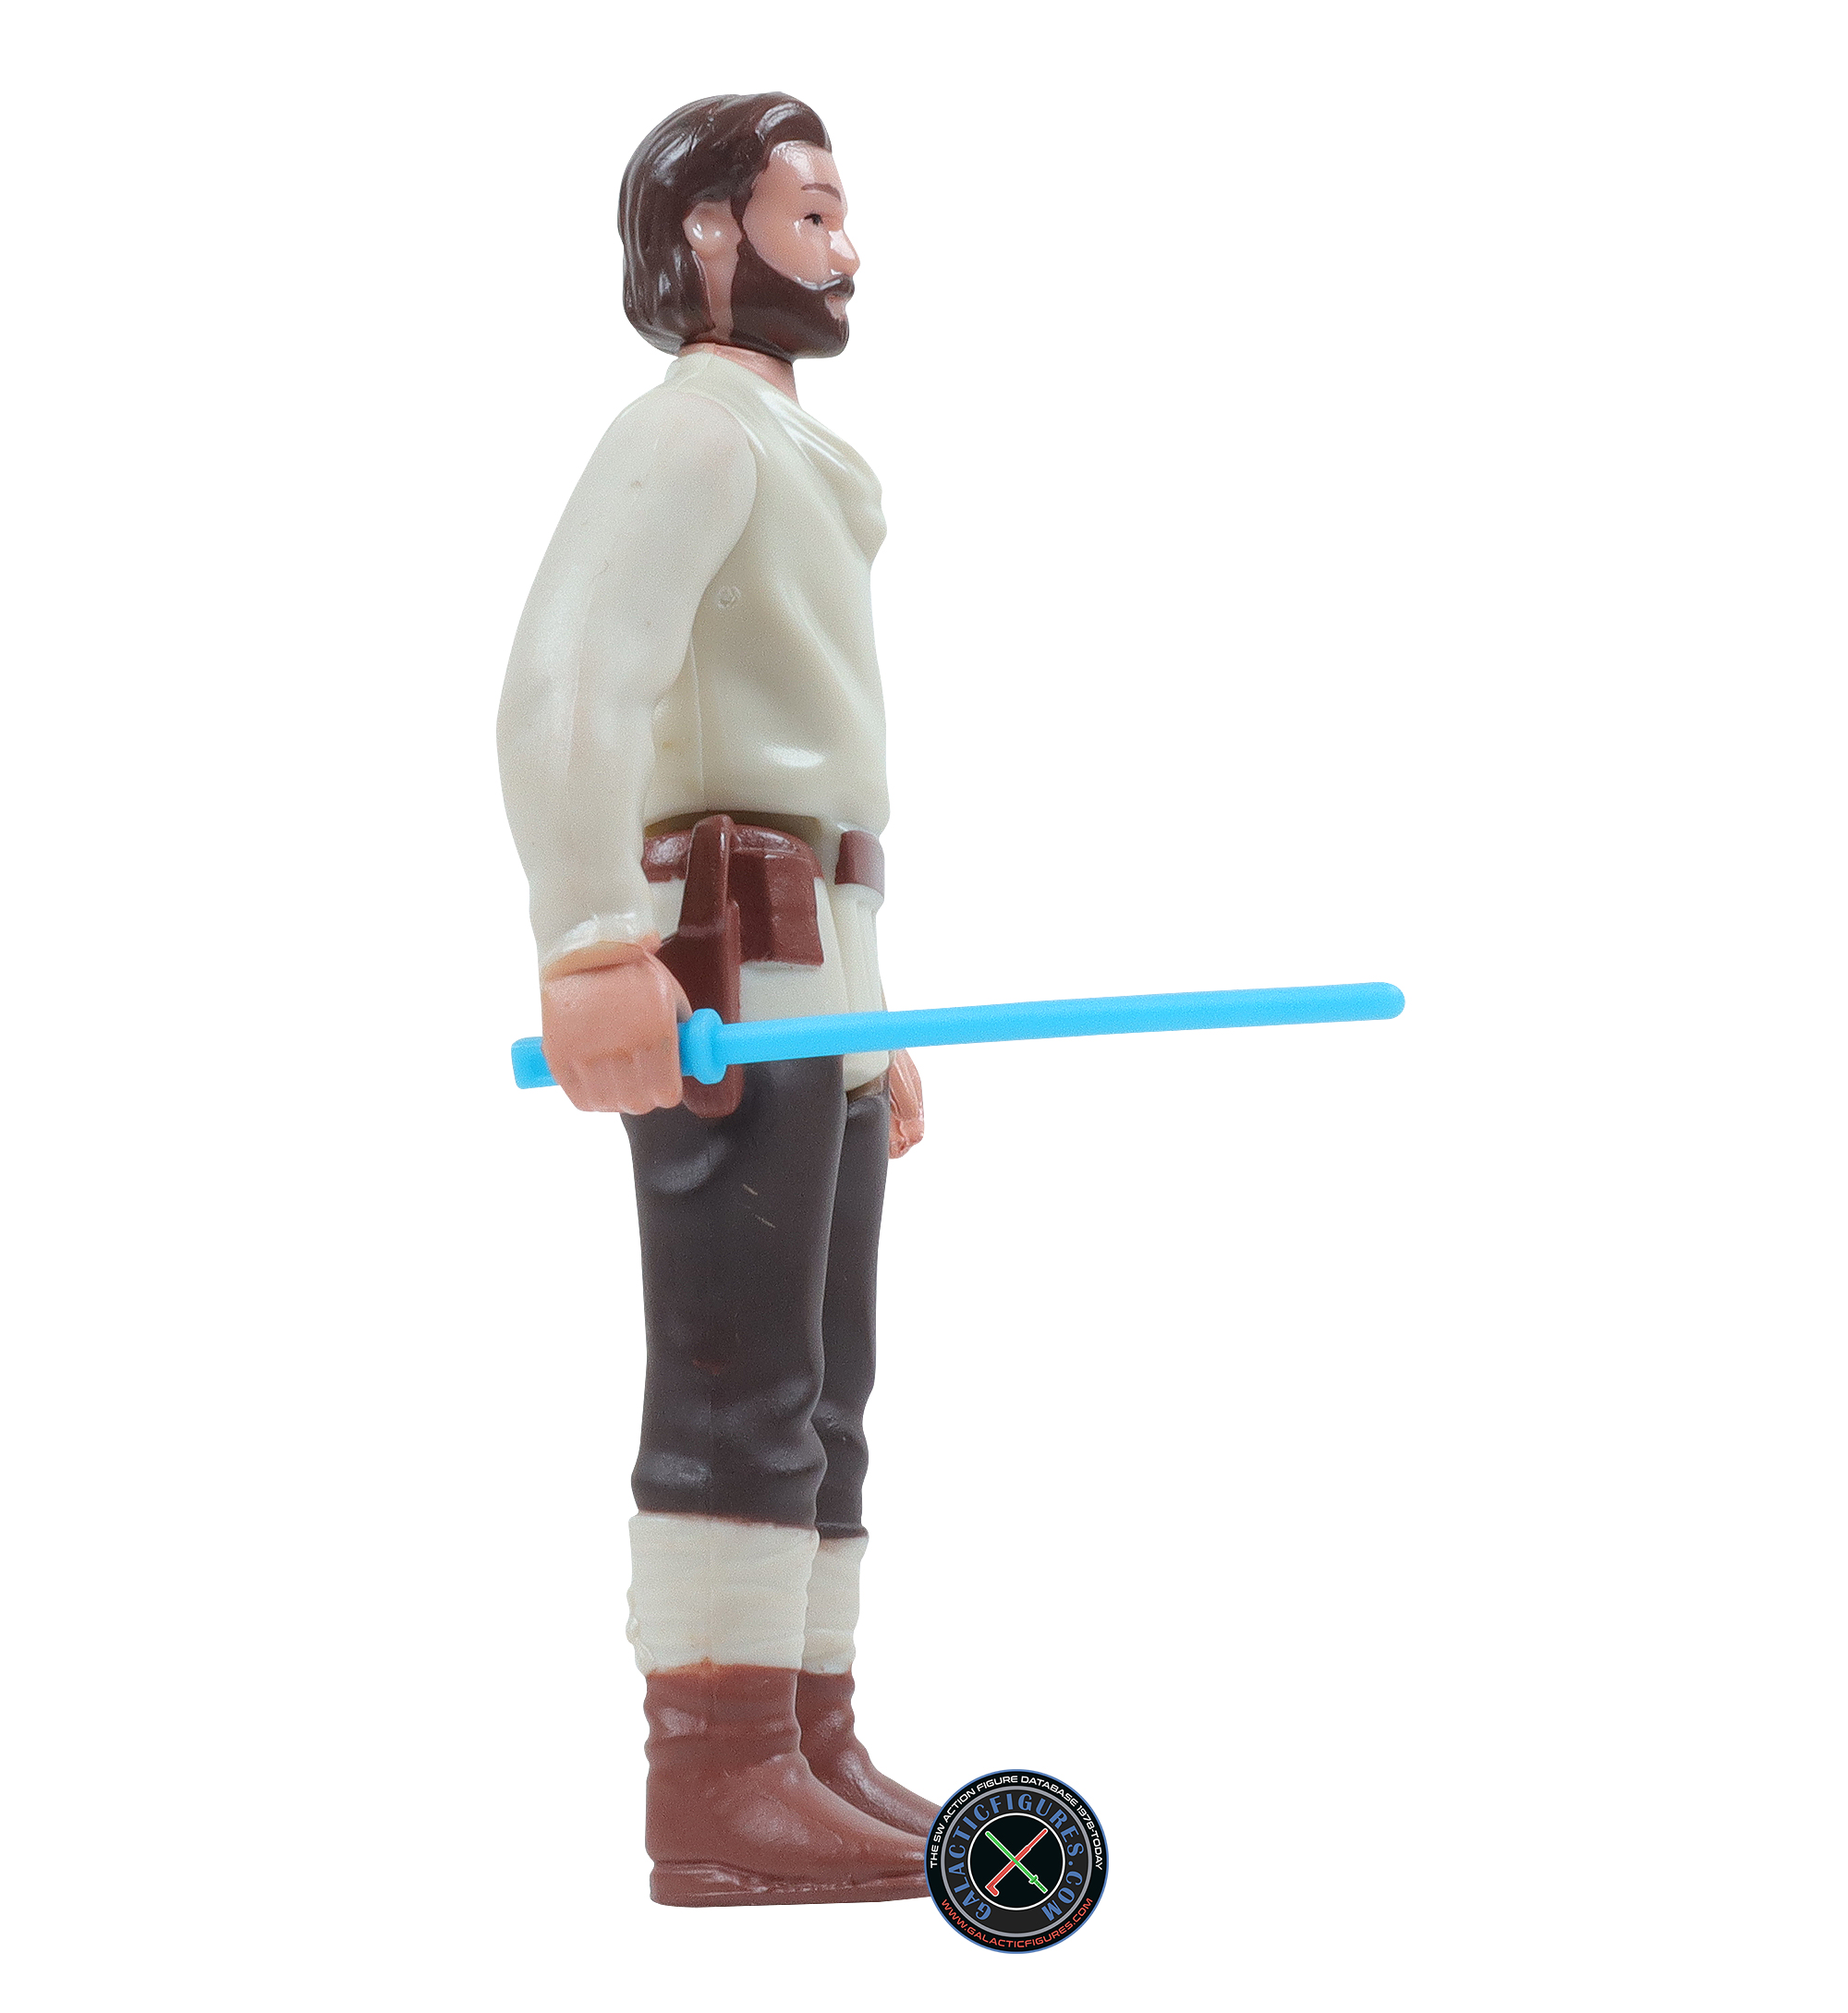 Obi-Wan Kenobi Wandering Jedi